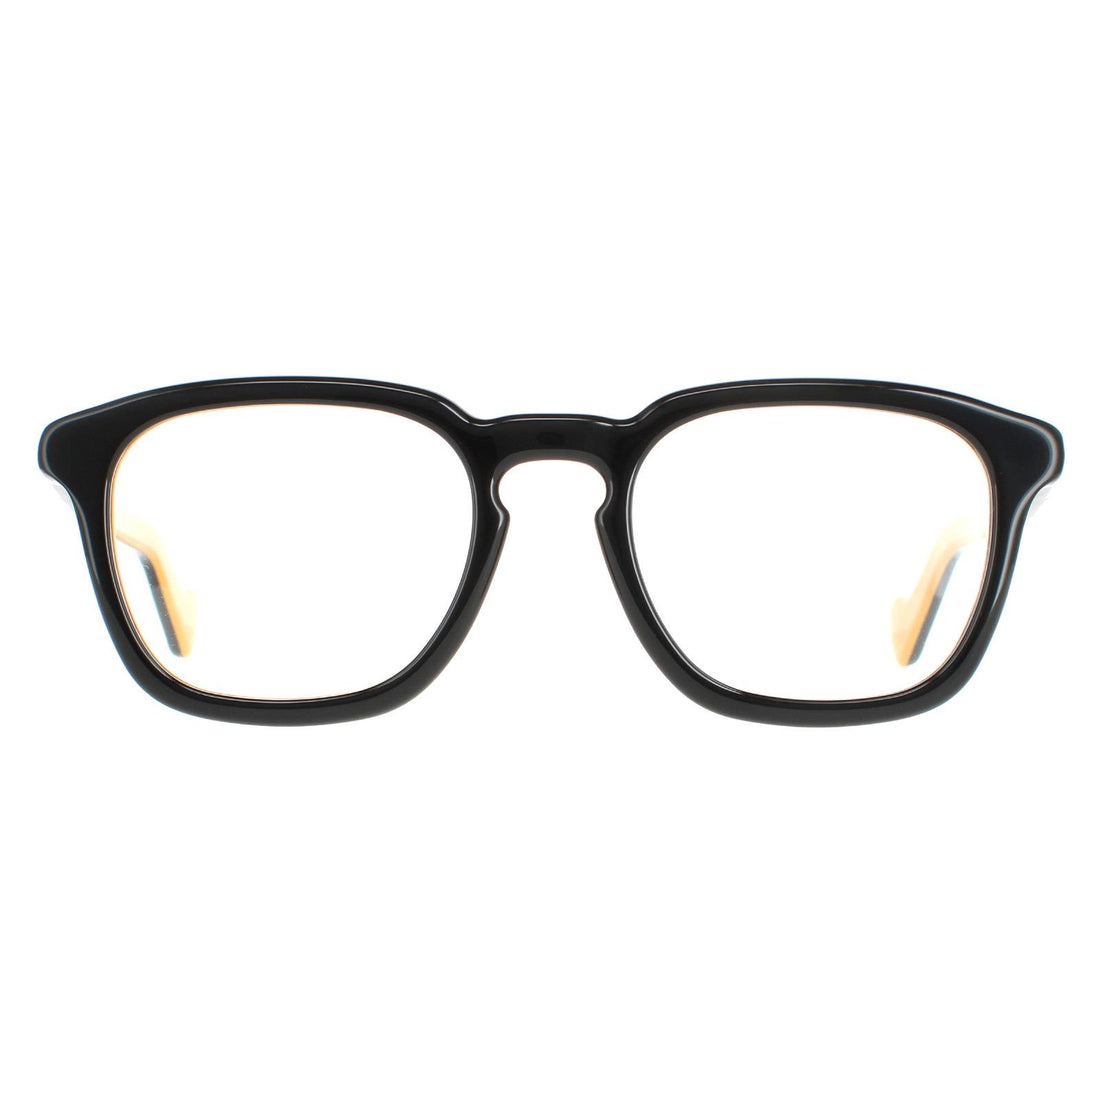 Moncler ML5042 Glasses Frames Black and Ochre